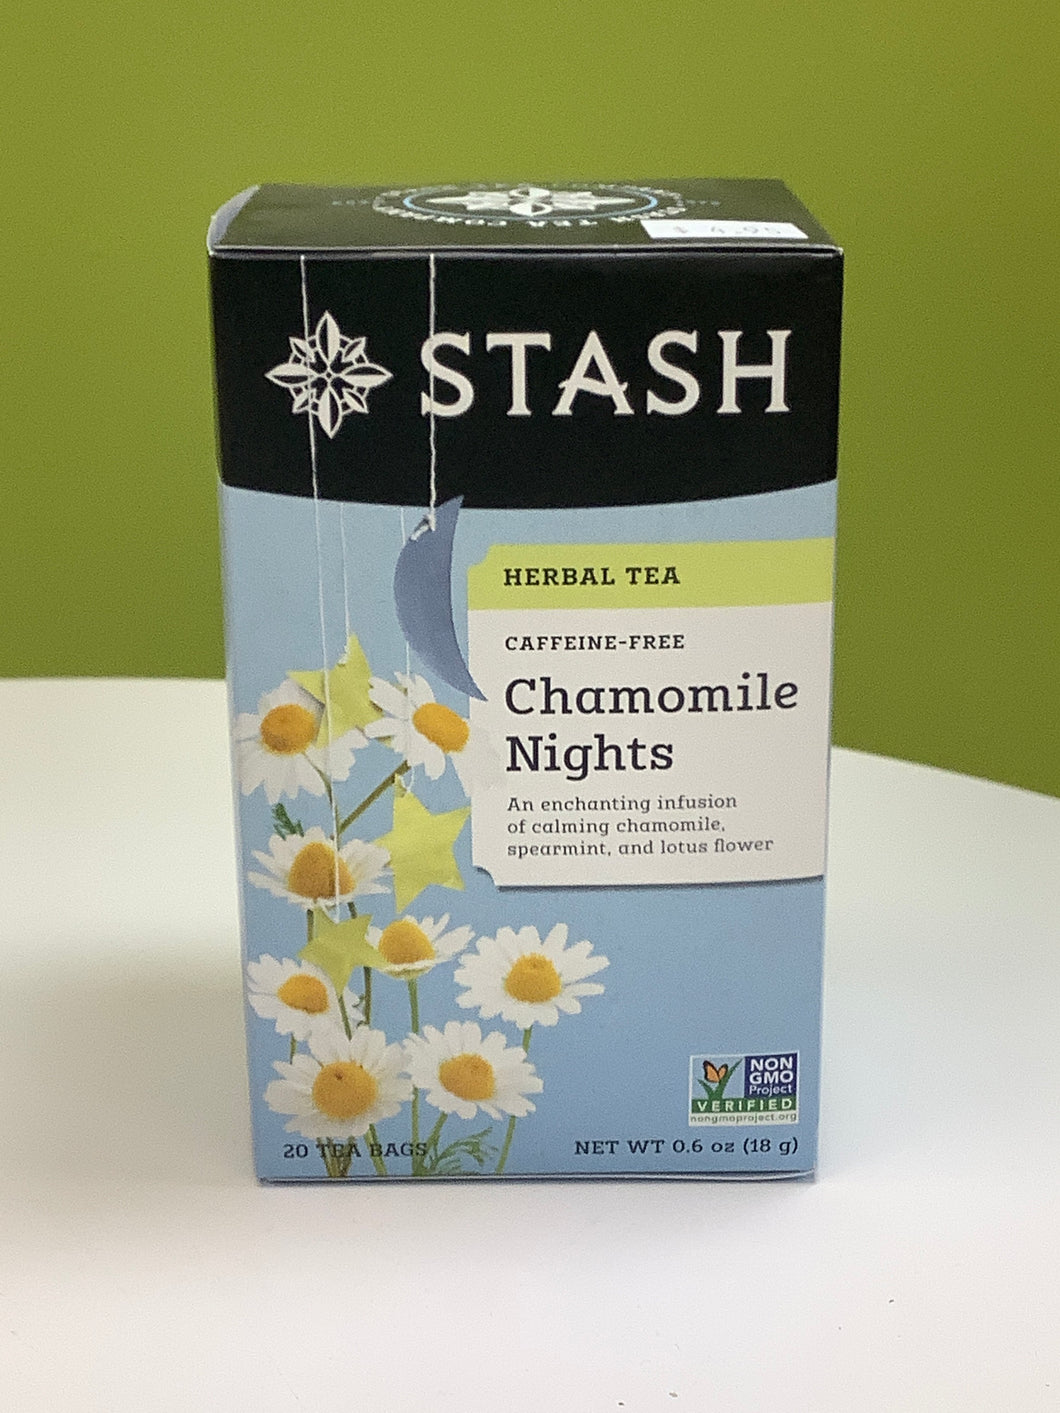 Stash Chamomile Nights Tea